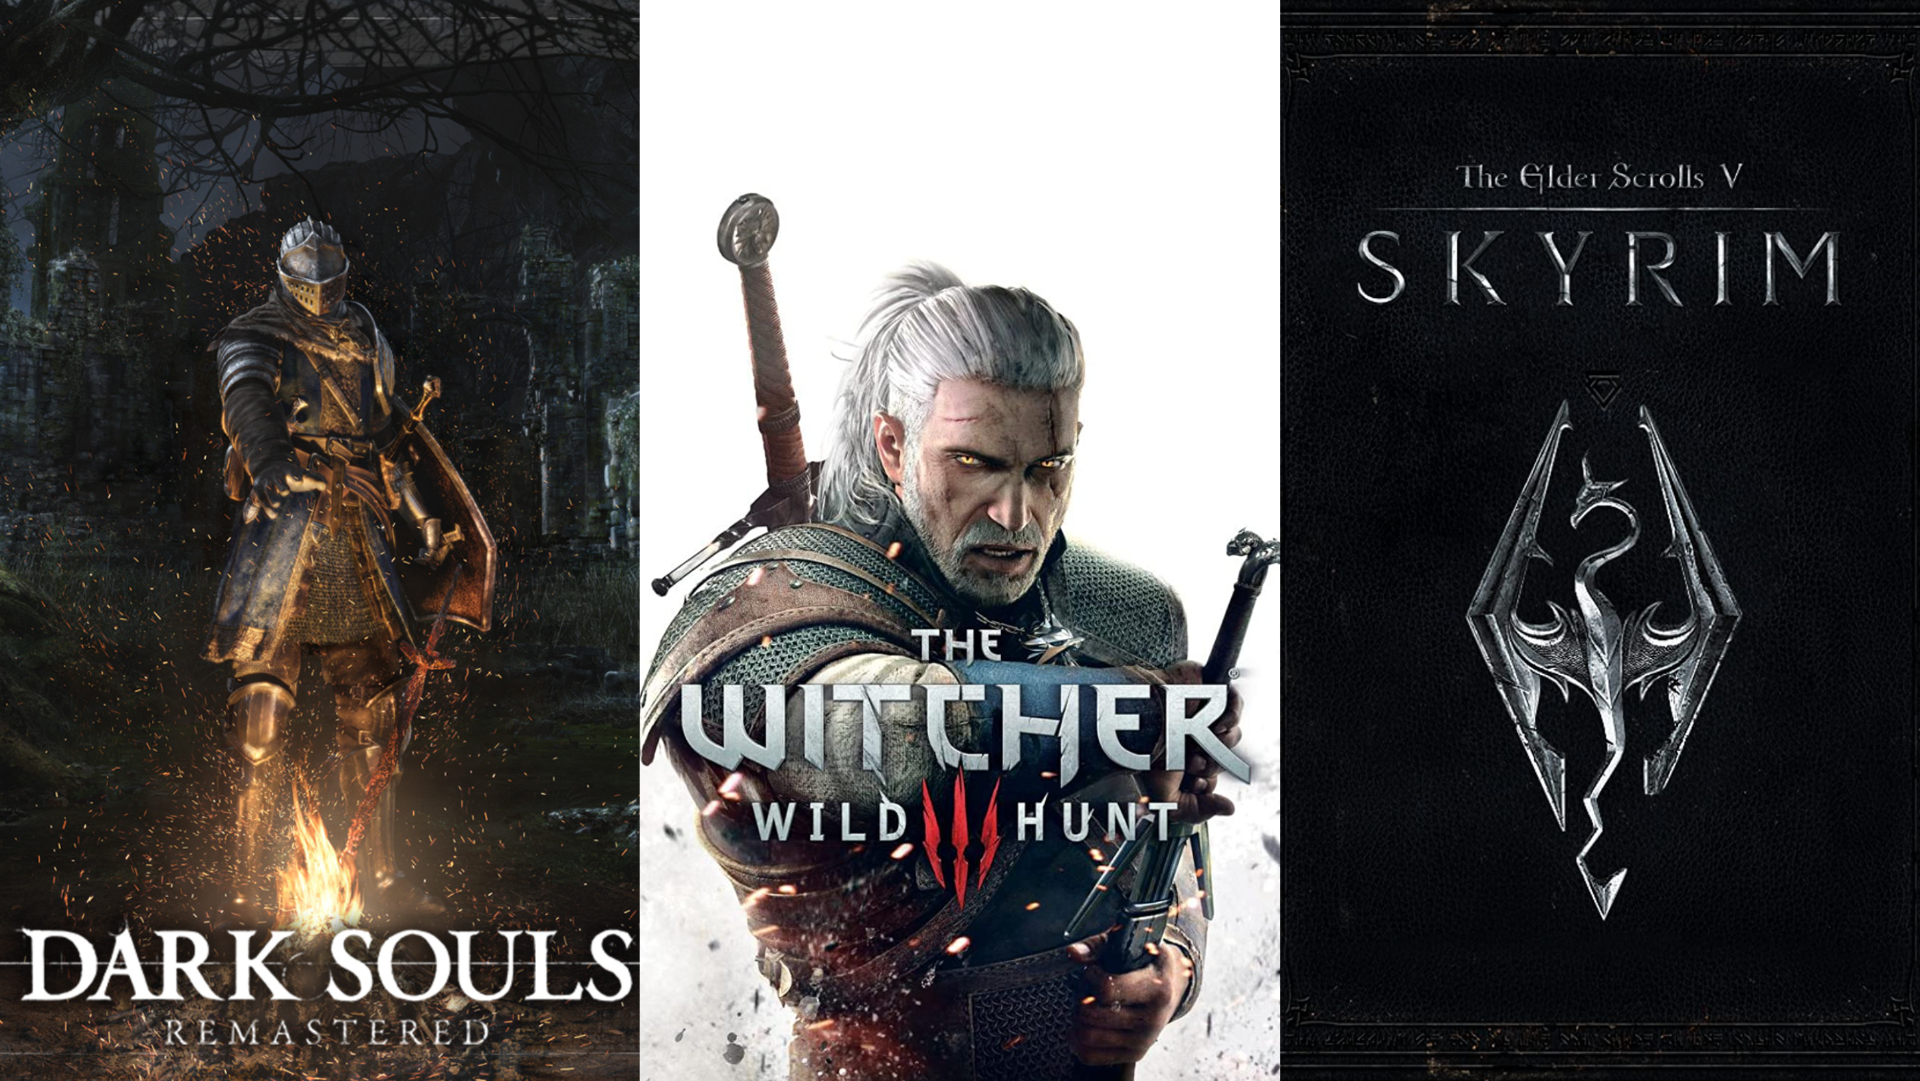 Imagem dividida de Dark Souls, The Witcher 3 e arte promocional de Skyrim.